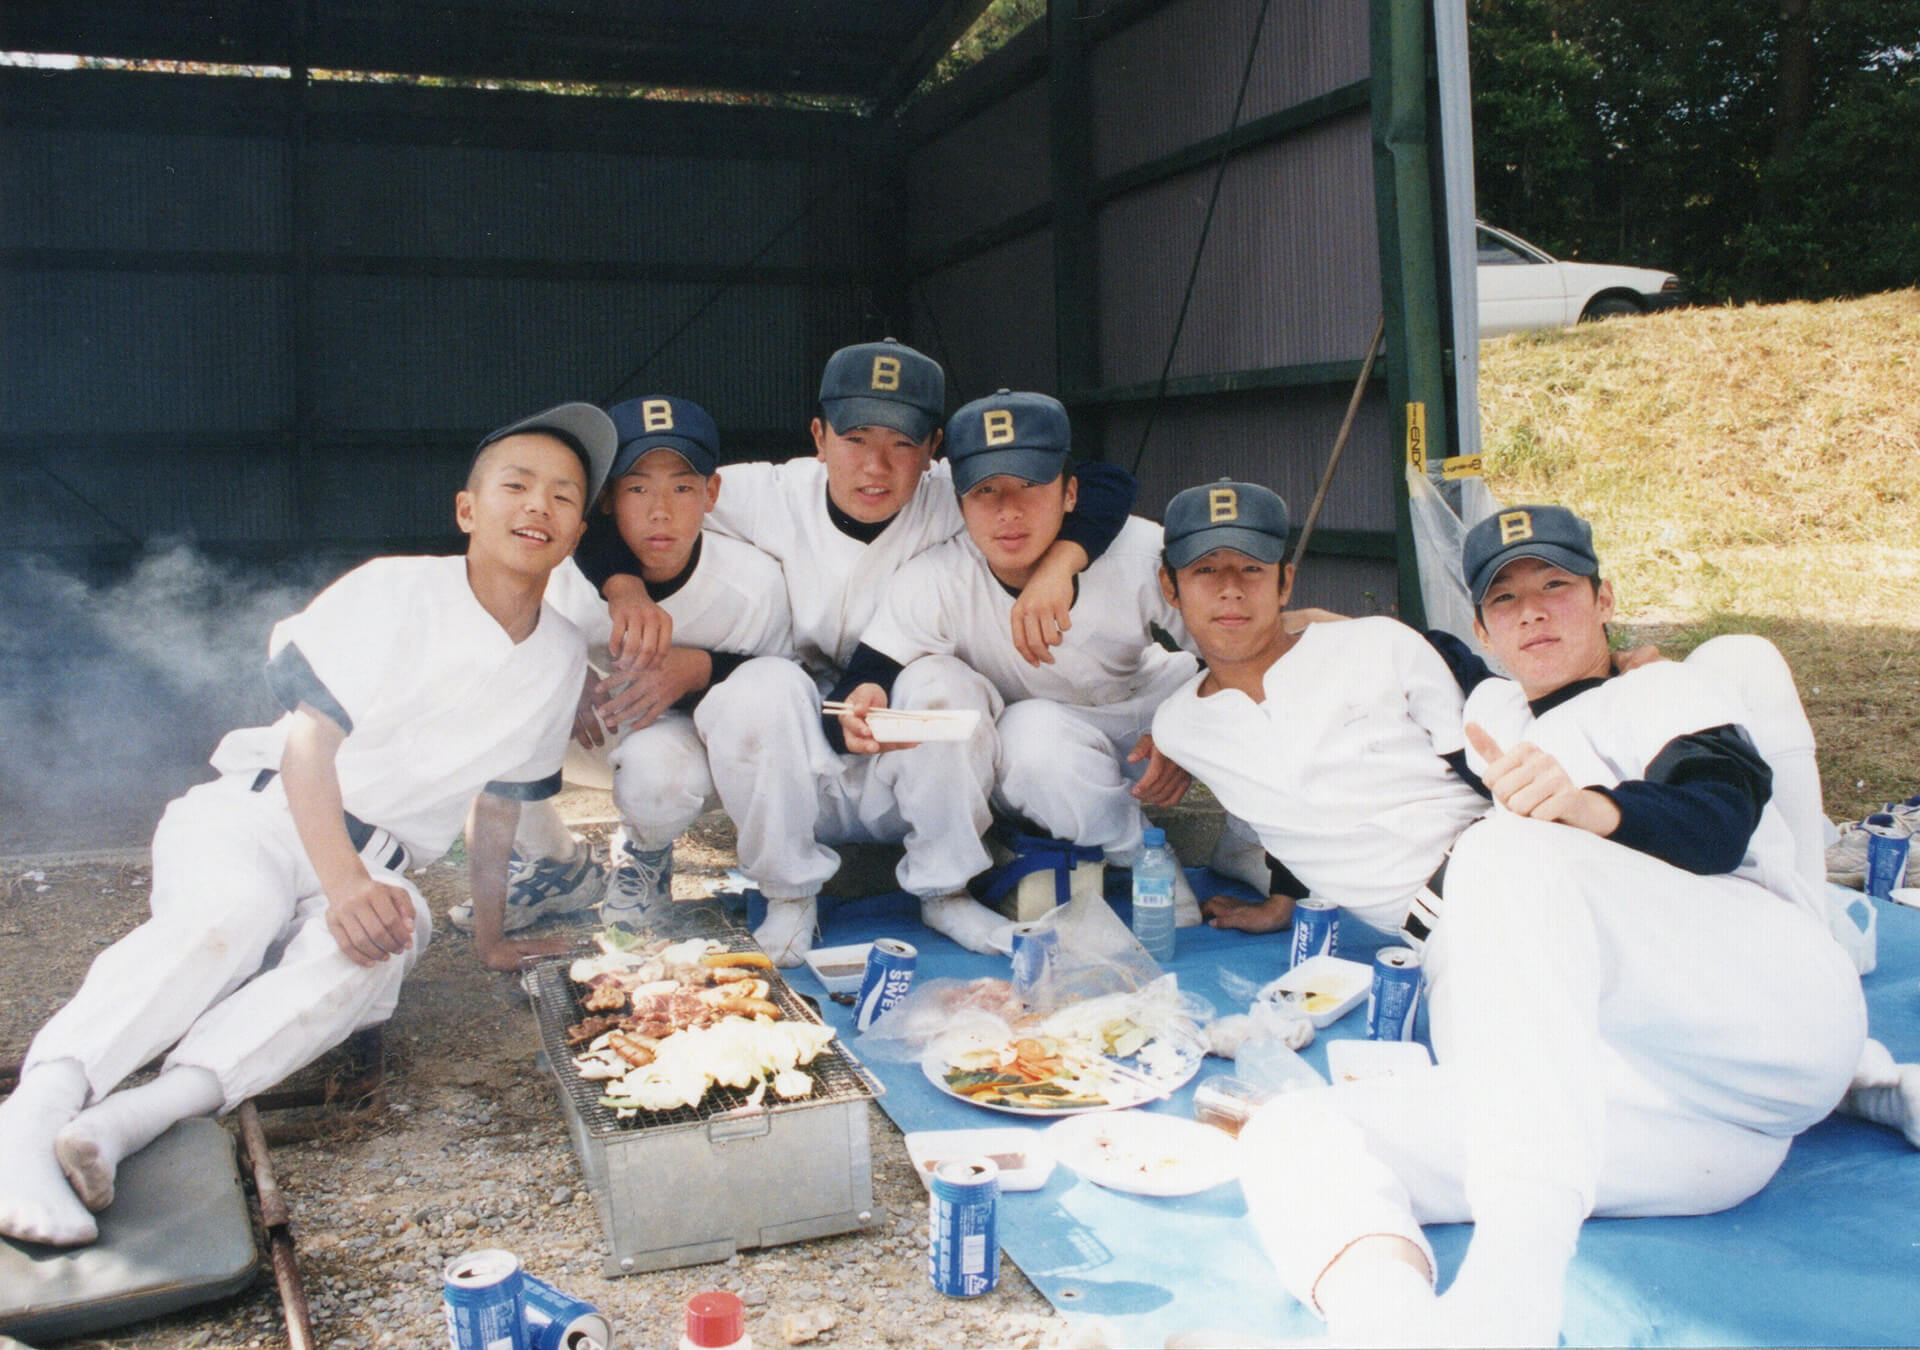 1999年 6期生卒団式 サンジルシ球場バーベキュー1